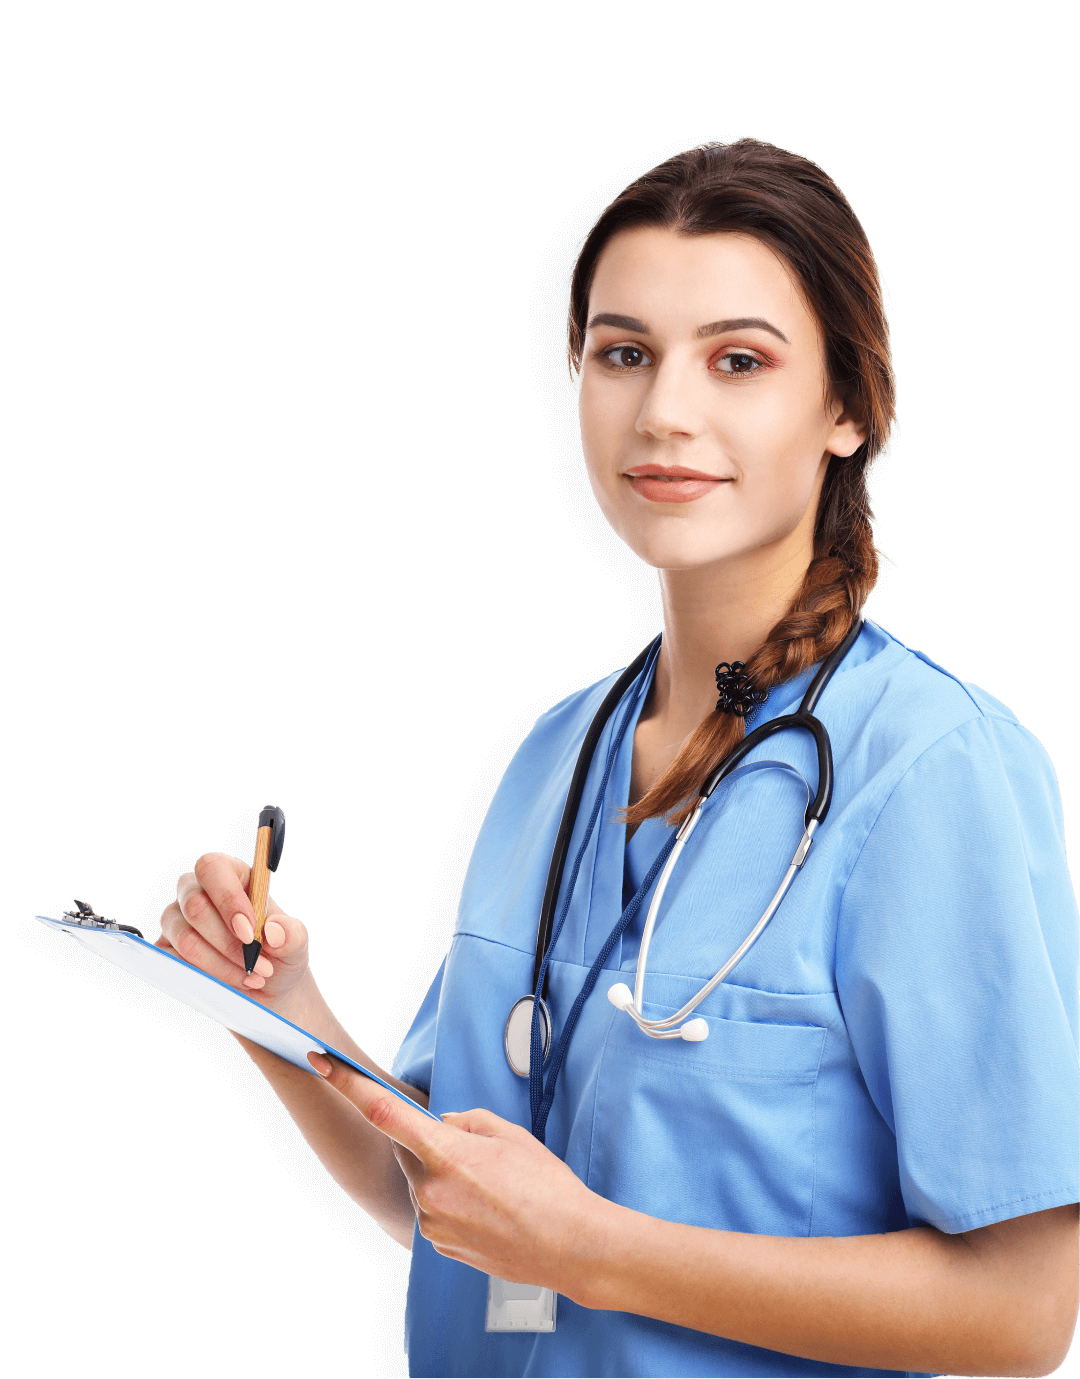 Nurse-Pain Management (PMGT) professional